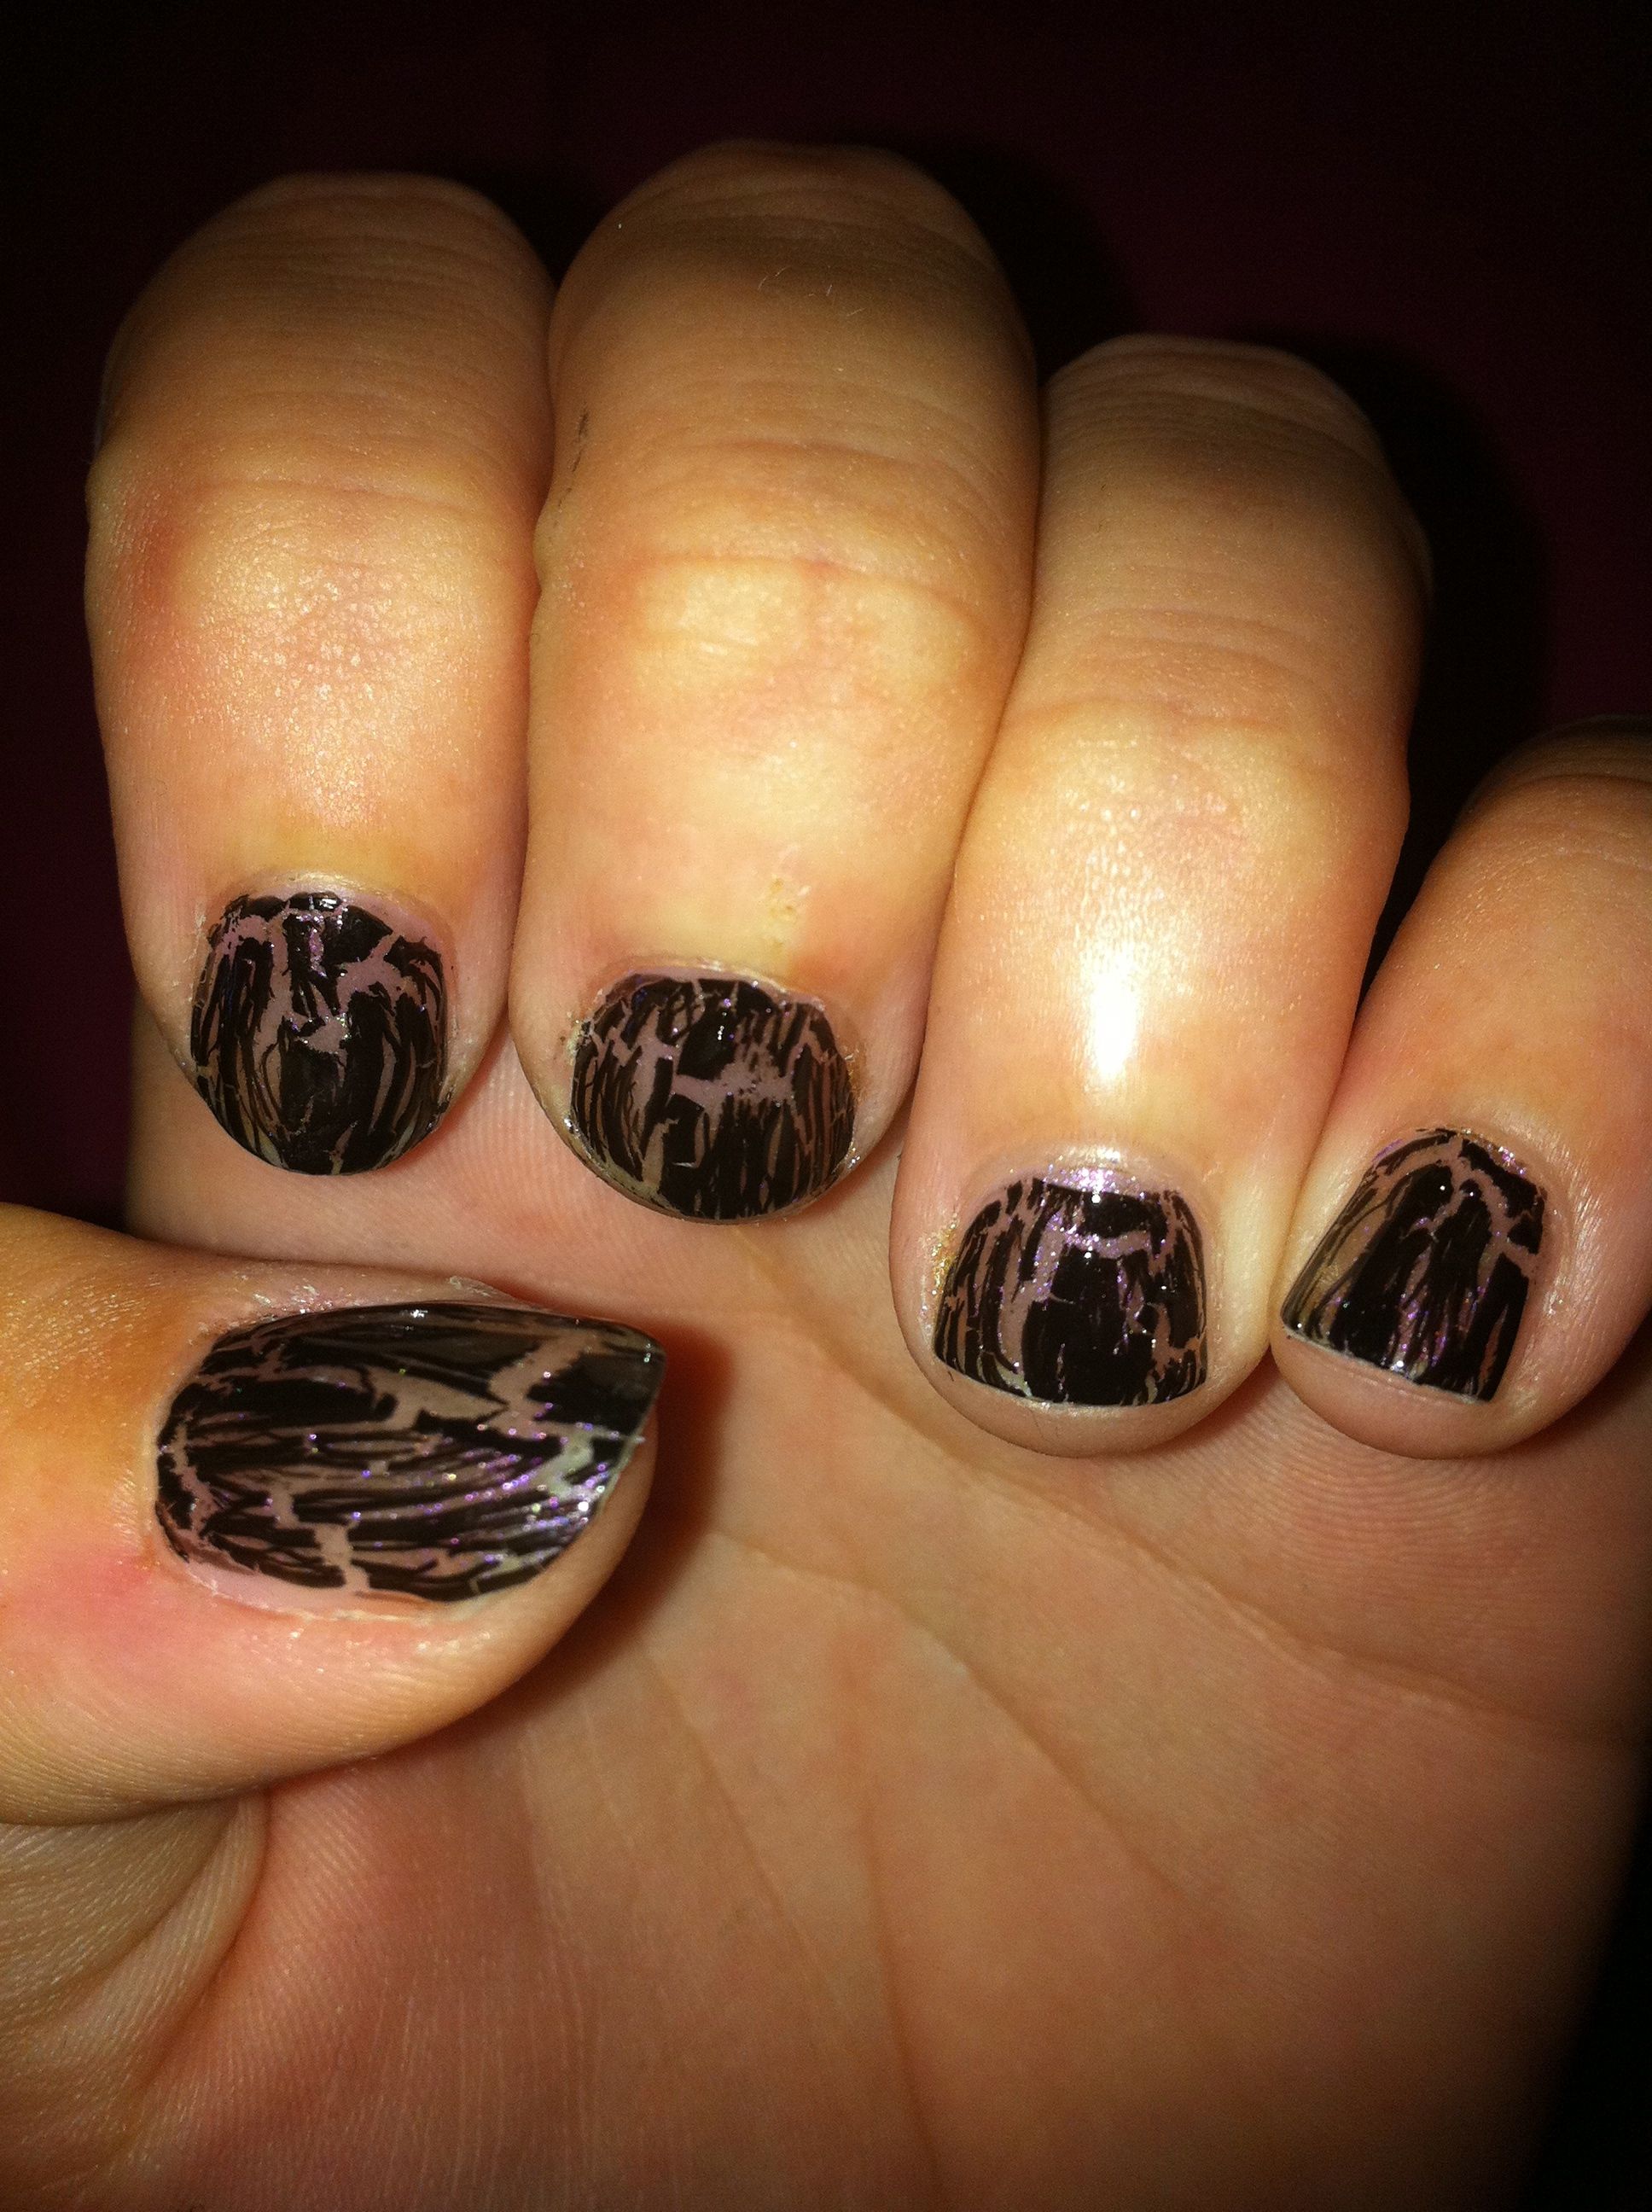 Loving nail polish | Hair and nails, Fashion nails, Nail design inspiration